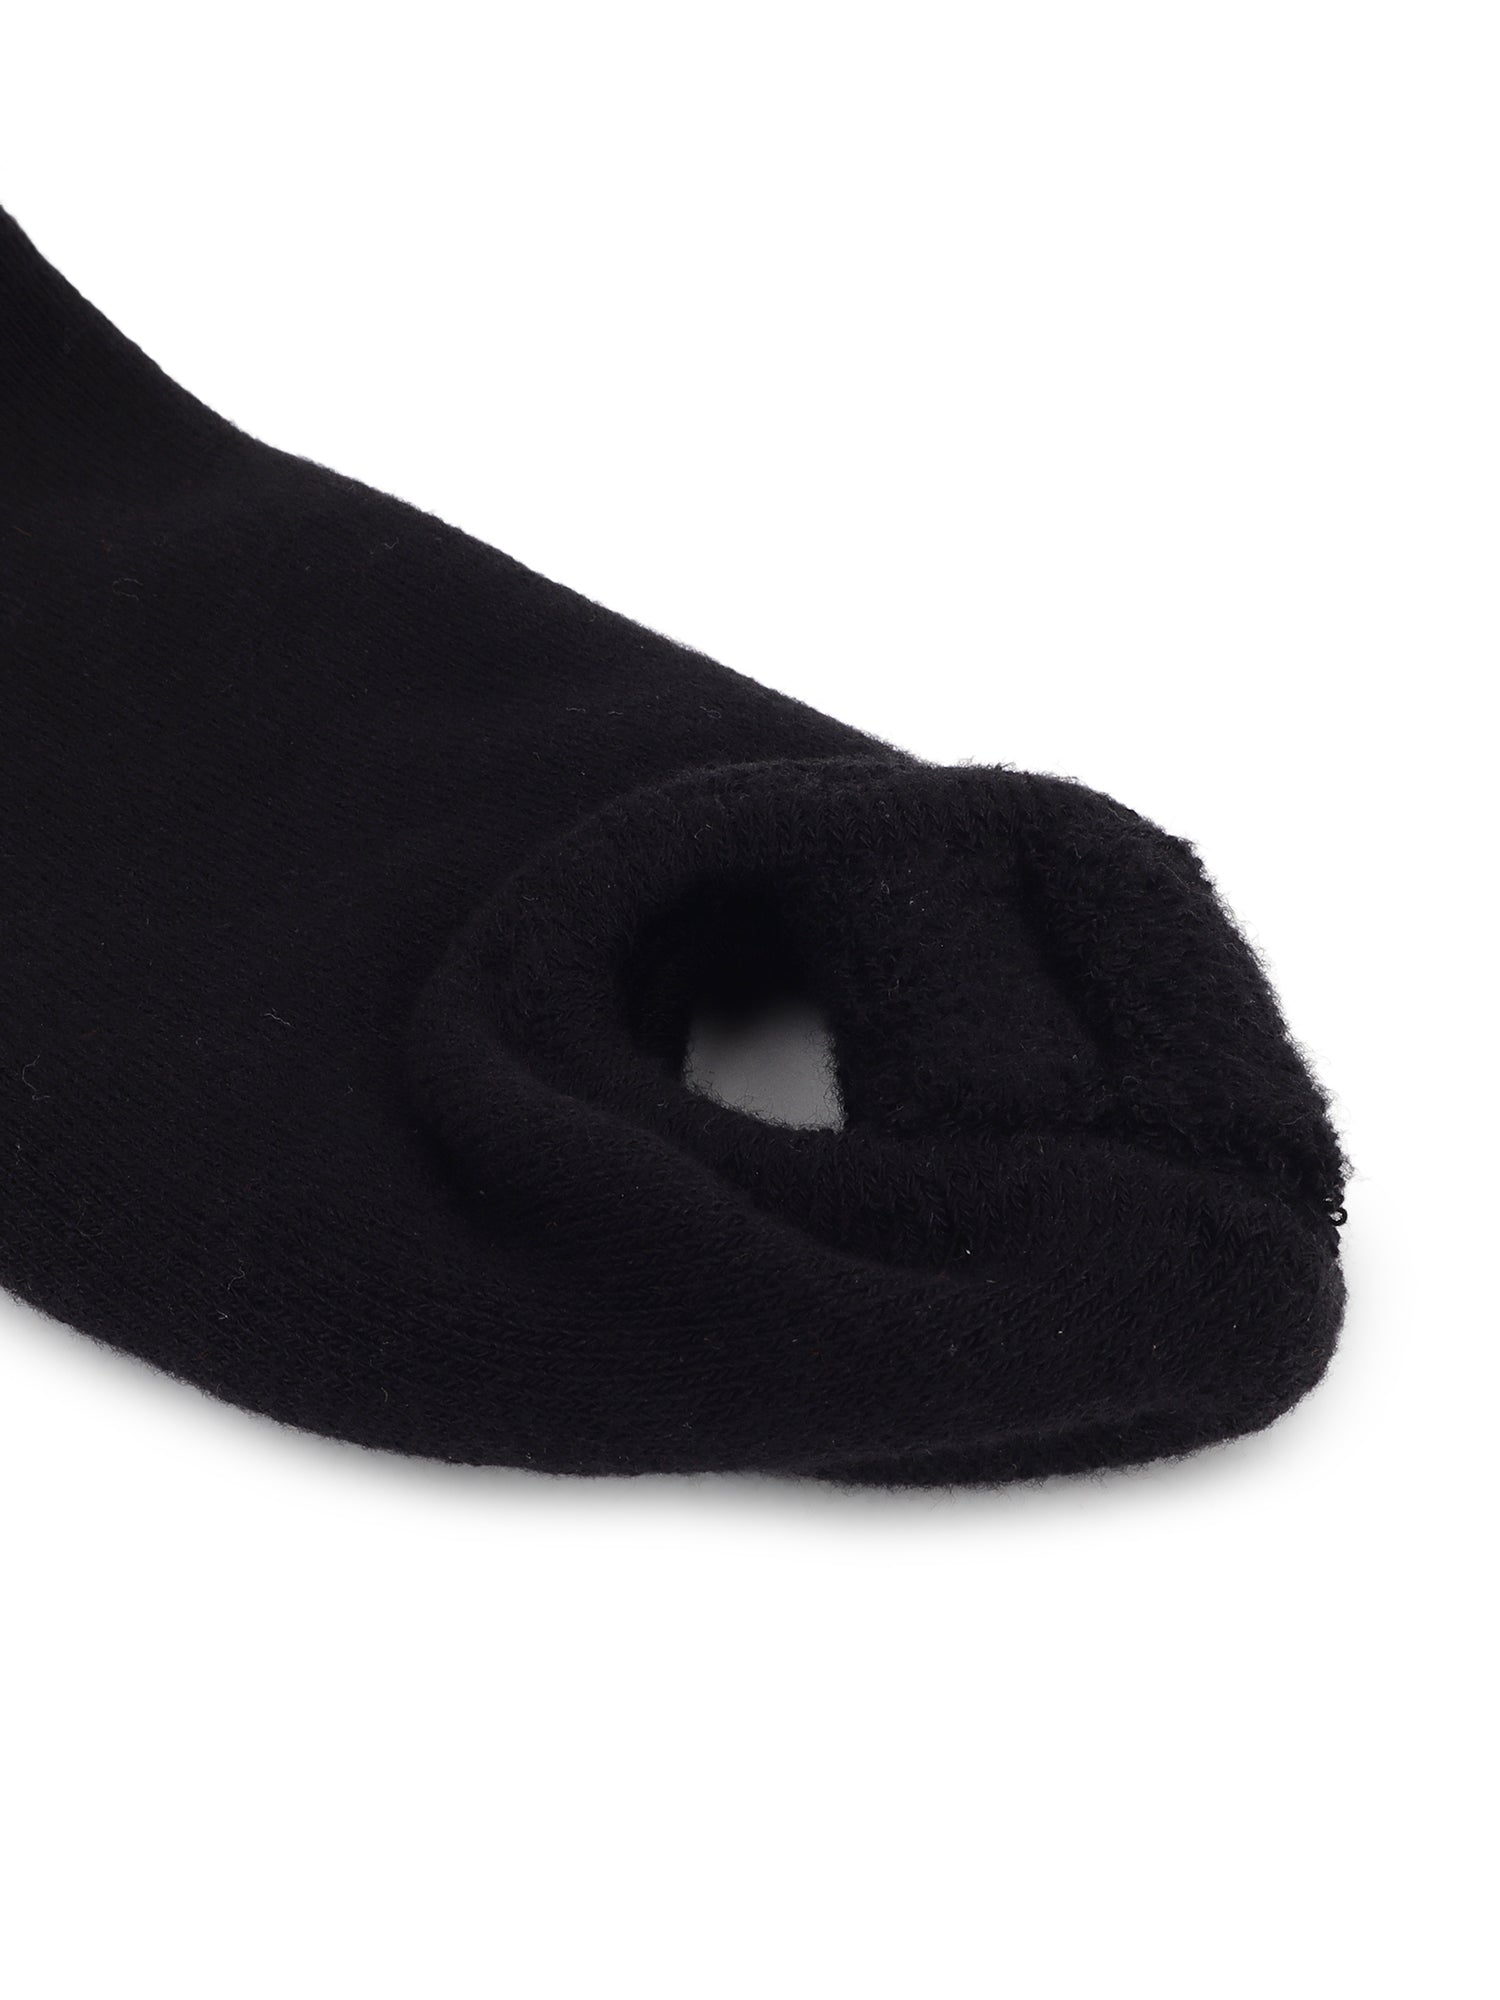 Foot Alignment Sock Black Classic